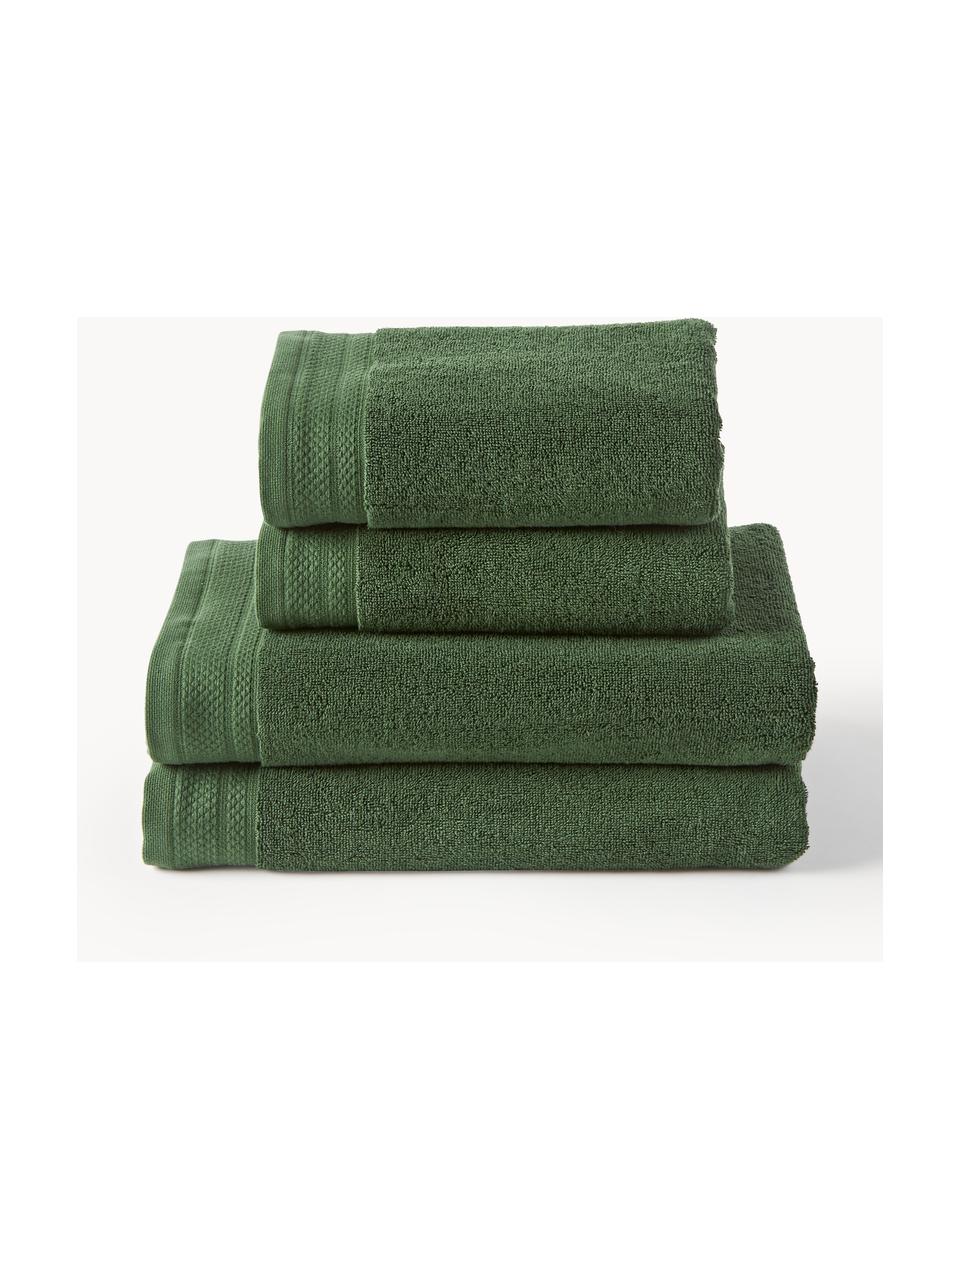 Lot de serviettes de bain en coton bio Premium, tailles variées, 100 % coton bio certifié GOTS (par GCL International, GCL-300517)
Qualité supérieure 600 g/m², Vert foncé, Lot de 6 éléments (serviettes d'invité, serviettes de toilette & draps de bain)